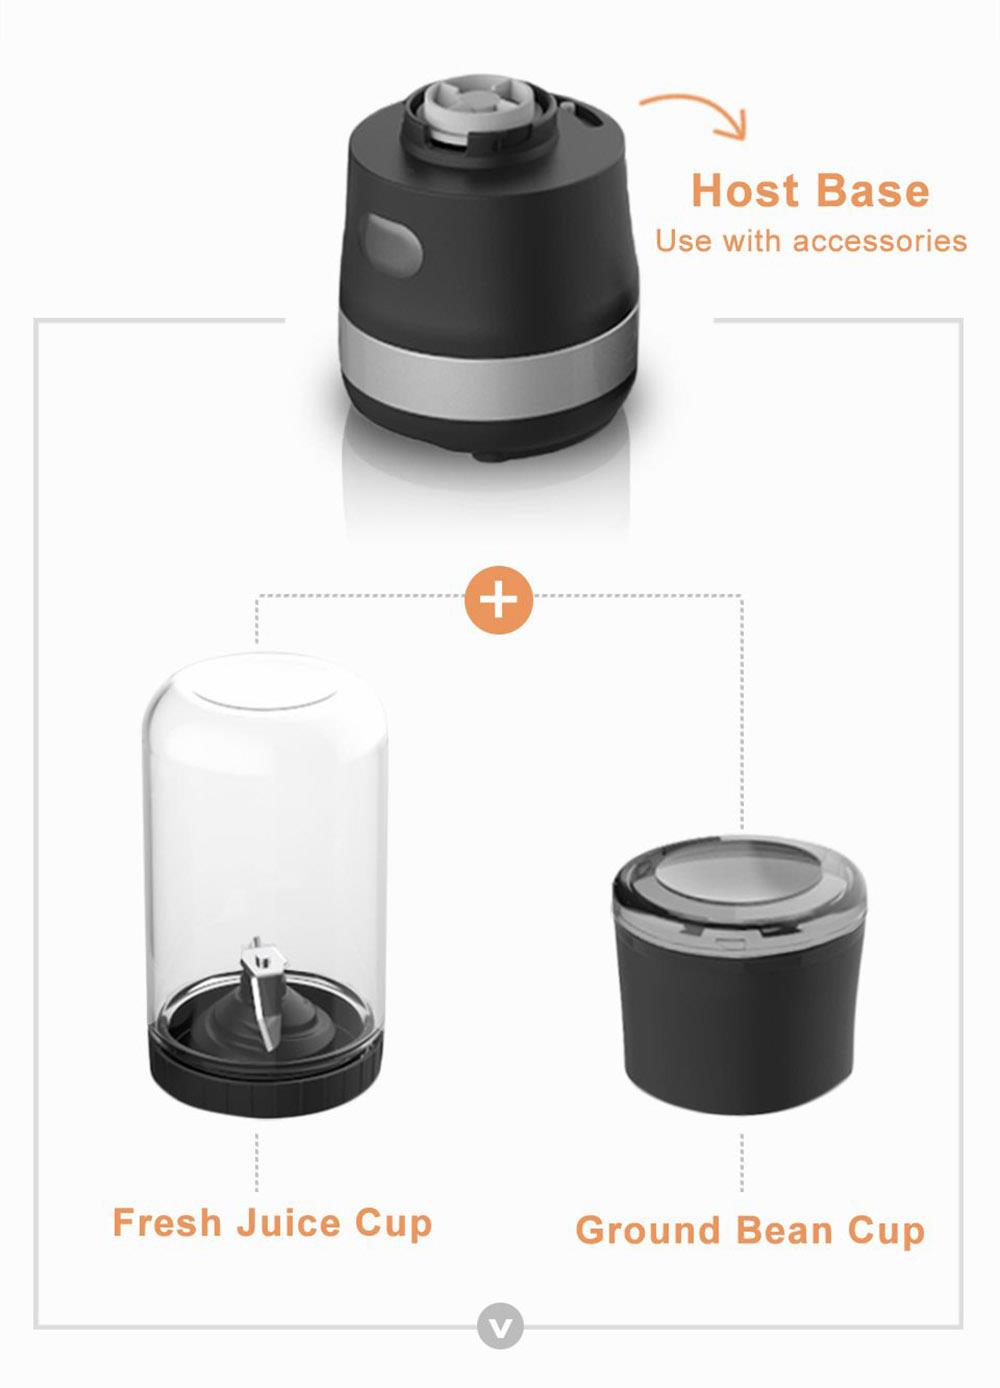 HiBREW 70W tragbare Kaffeemühle Blender, DC 5V USB wiederaufladbare Kaffeemühle, 350ml einzelne Tasse